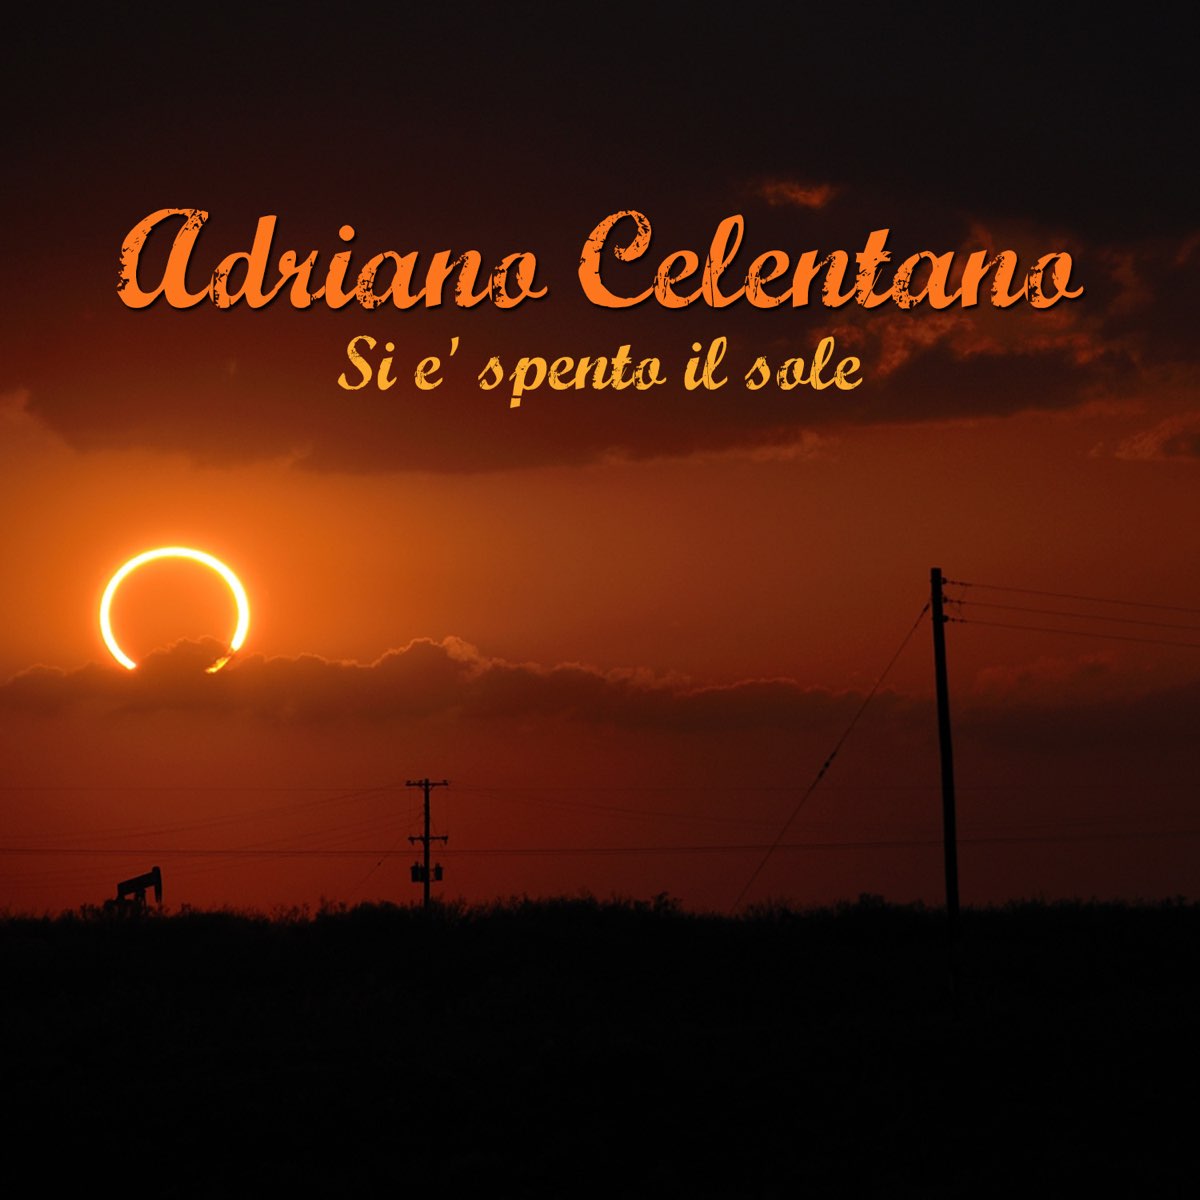 Si e' spento il sole - Single by Adriano Celentano on Apple Music